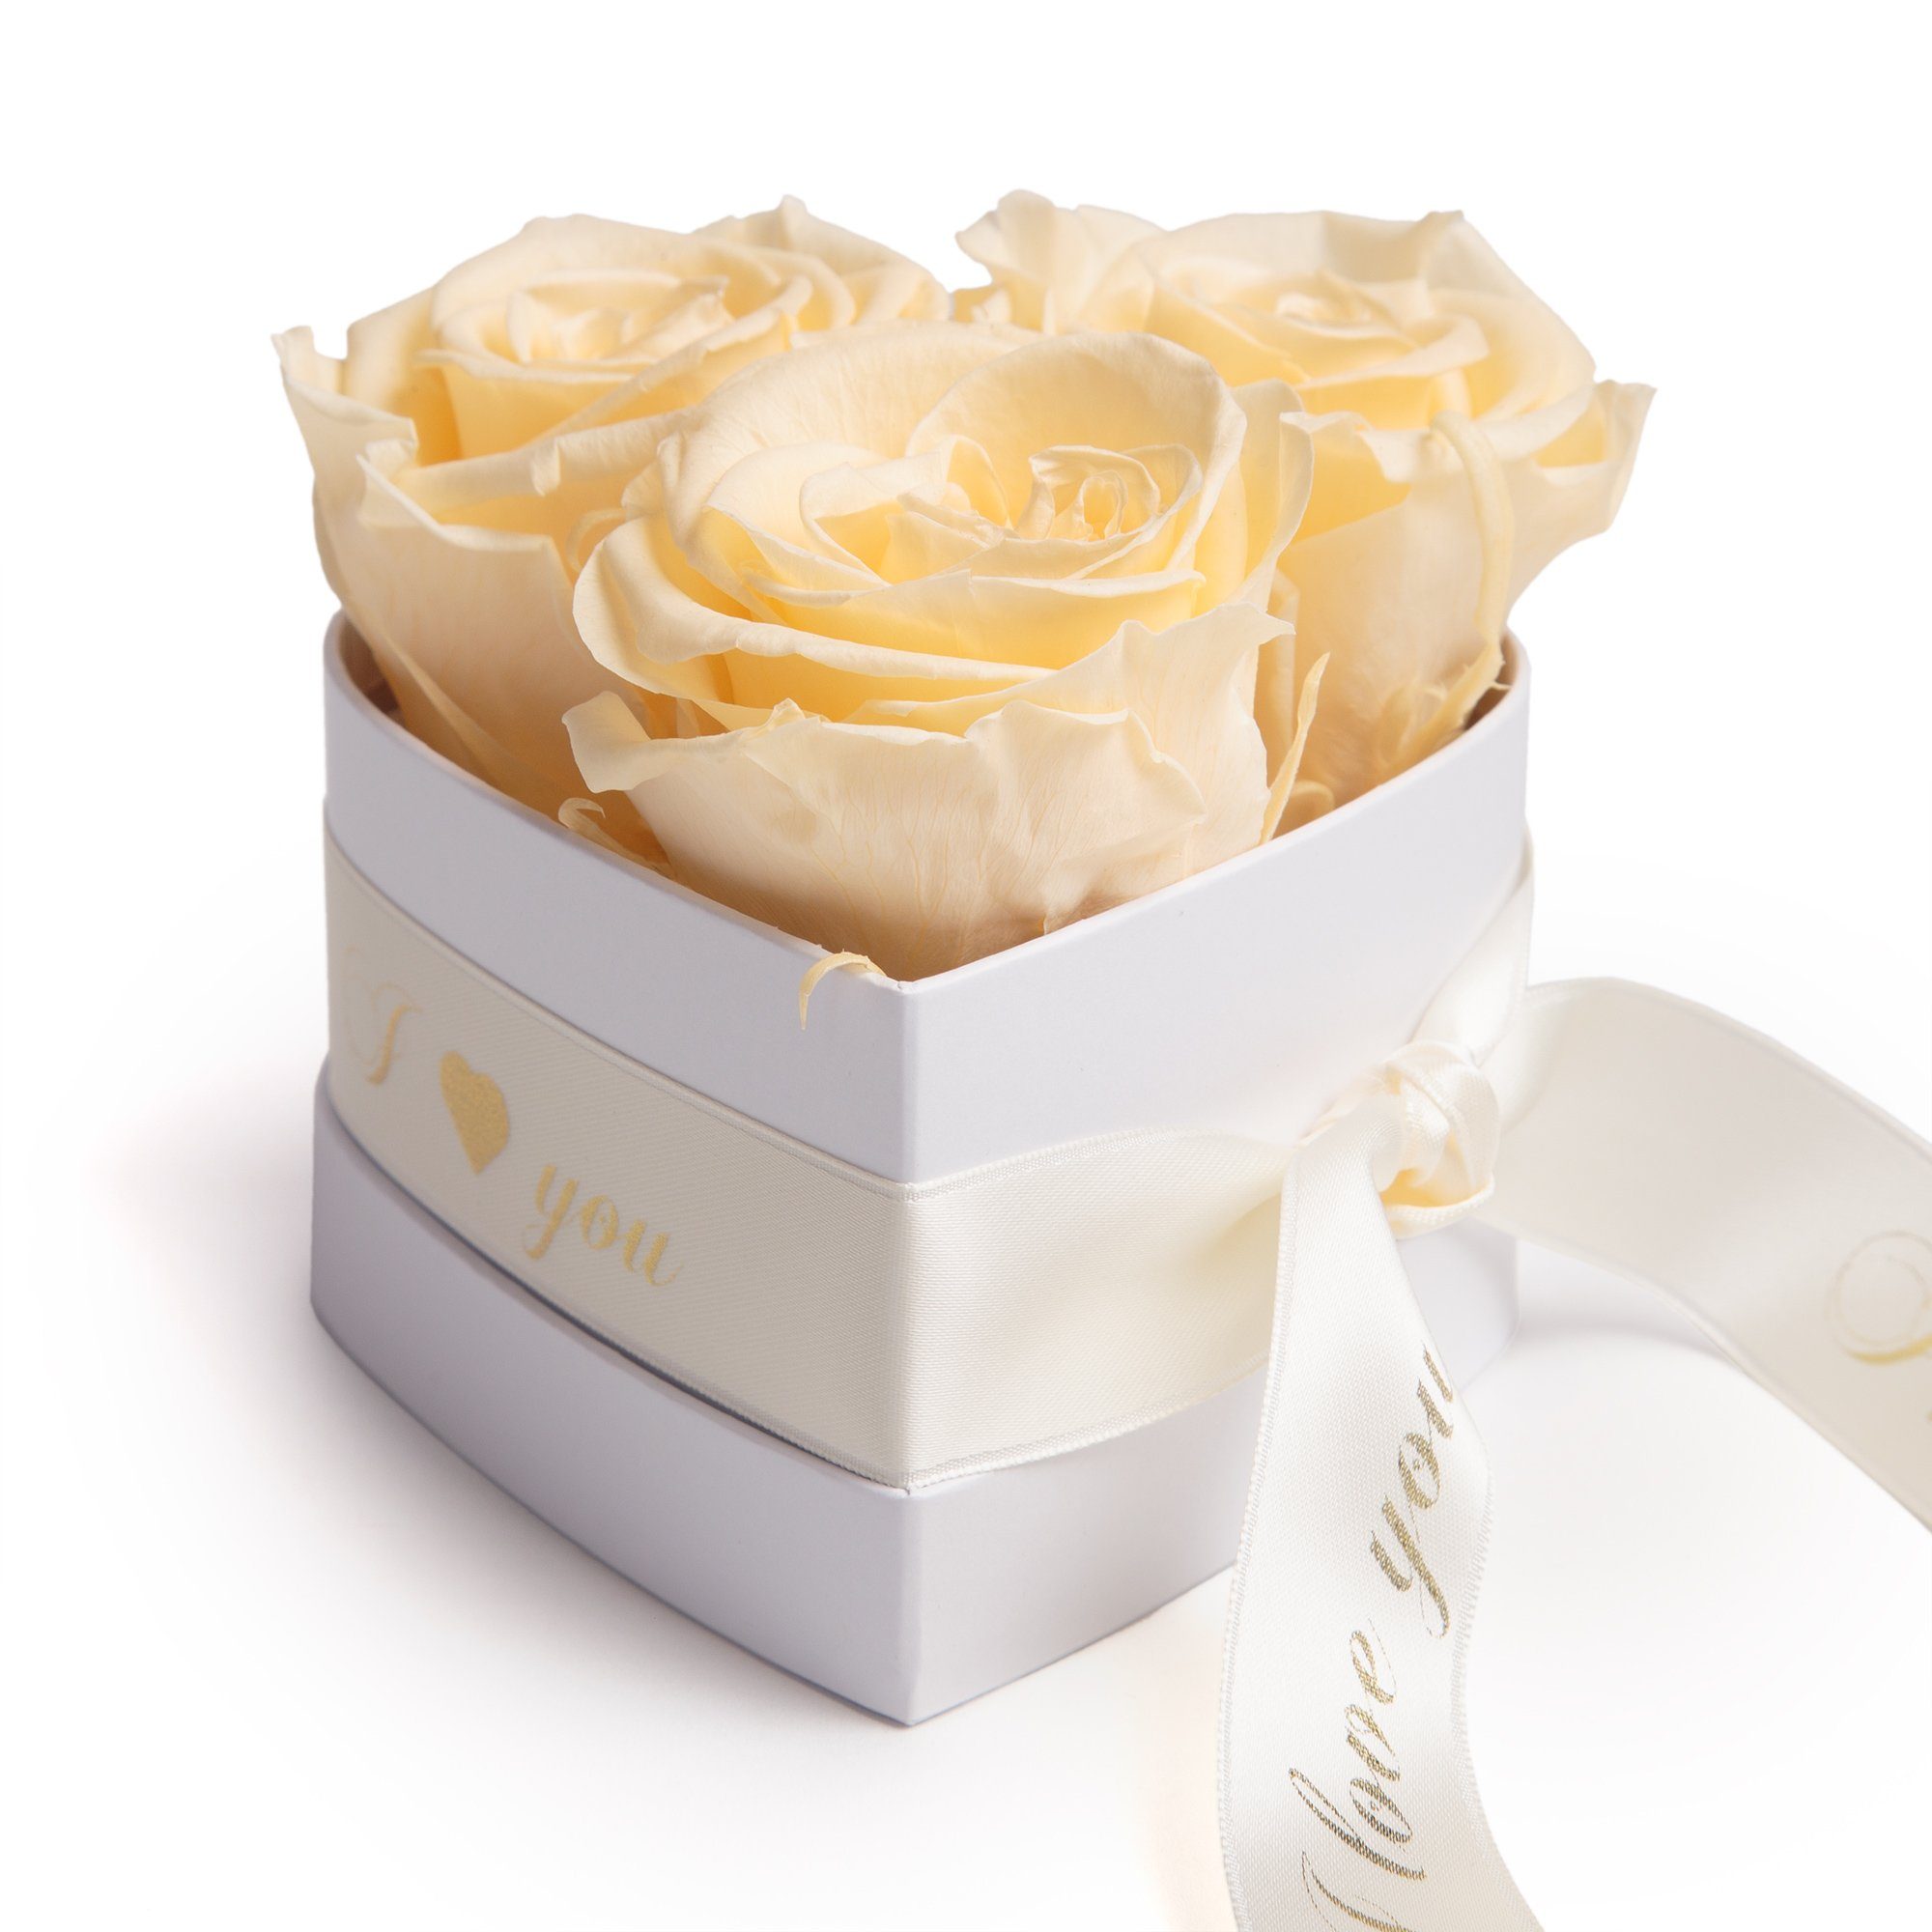 Kunstblume Rosenbox Herz 3 konservierte Infinity Rosen in Box I Love You Rose, ROSEMARIE SCHULZ Heidelberg, Höhe 8.5 cm, Valentinstag Geschenk für Sie Champagner | Kunstblumen